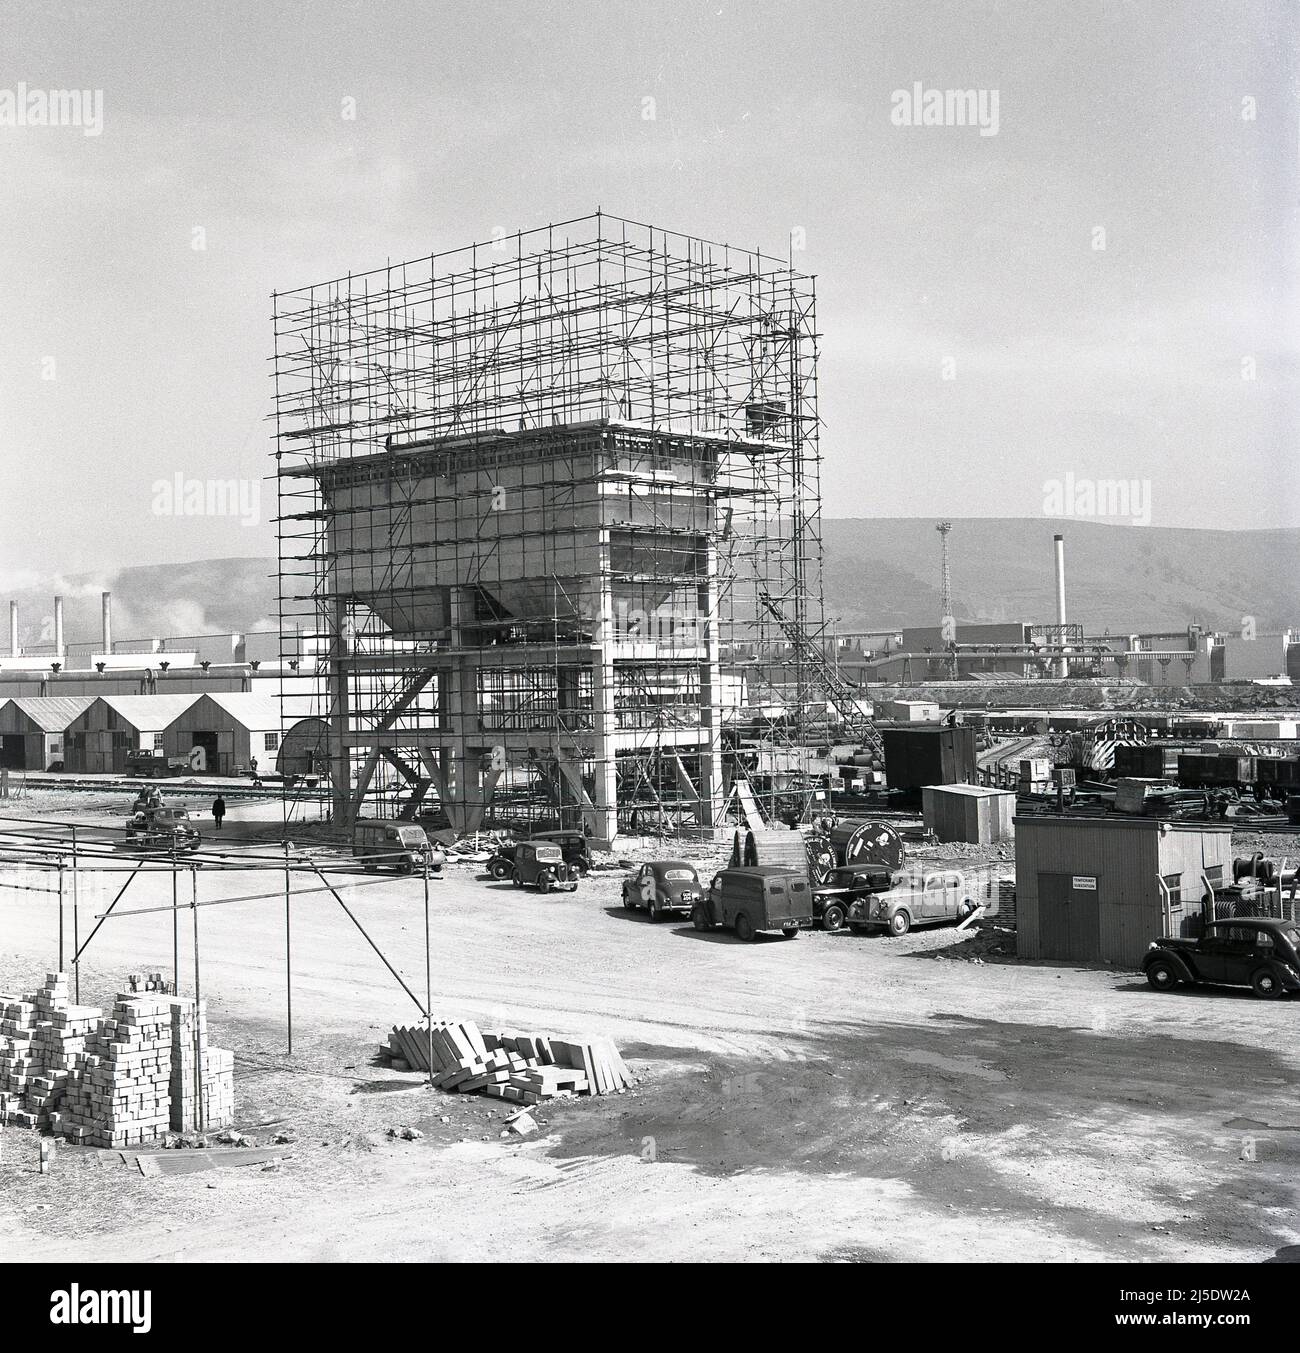 1950, historische Bauarbeiten beim Bau eines Betonwasserturms im riesigen Stahlwerk Abbey der Steel Company of Wales in Port Talbot, Wales, Großbritannien. Ein Schild auf der korragierten Hütte auf dem Boden in ihrer Nähe besagt: 'Temporäre Umspannstation'. Autos und Lieferwagen der damaligen Zeit stehen auf dem Parkplatz. Erbaut auf dem Gelände des alten Margam Eisen- und Stahlwerks, wurde das Abteiwerk 1951 eröffnet. Bis zum Jahr 1953, bis zum Jahr 1960s, war es das größte Stahlwerk in Europa. 1967 wurde das Unternehmen verstaatlicht und wurde Teil von British Steel. Stockfoto